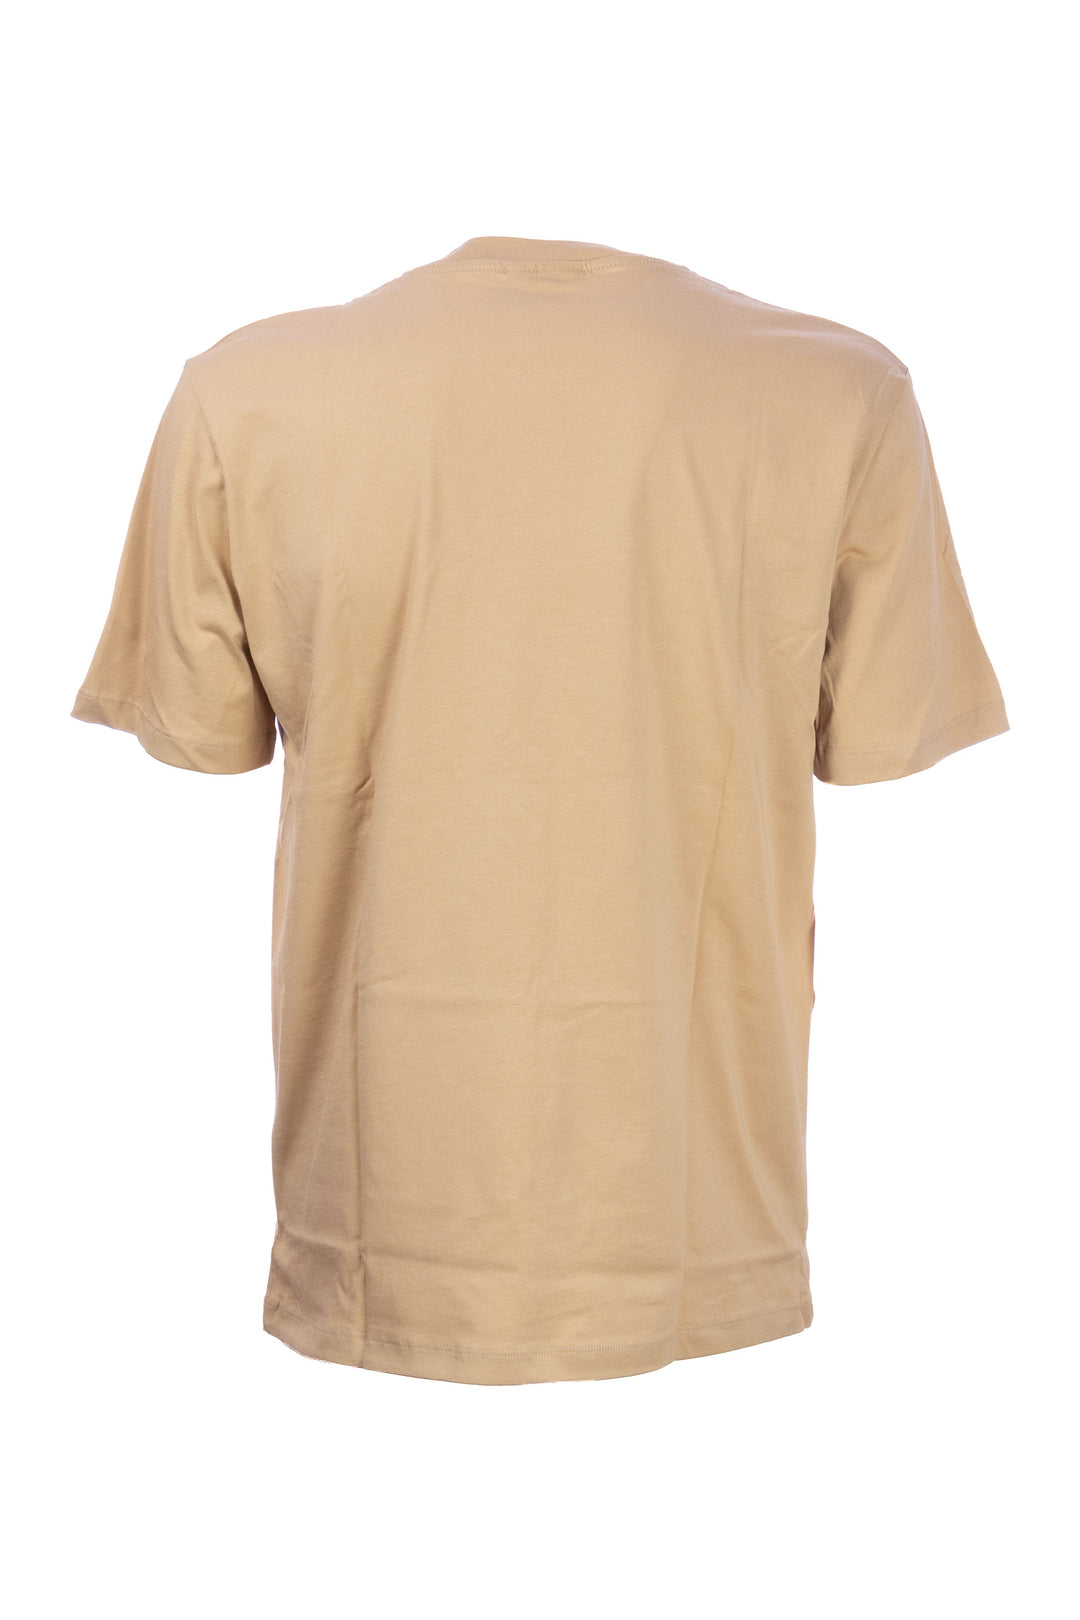 GAELLE T-shirt beige in cotone con logo stampato - Mancinelli 1954